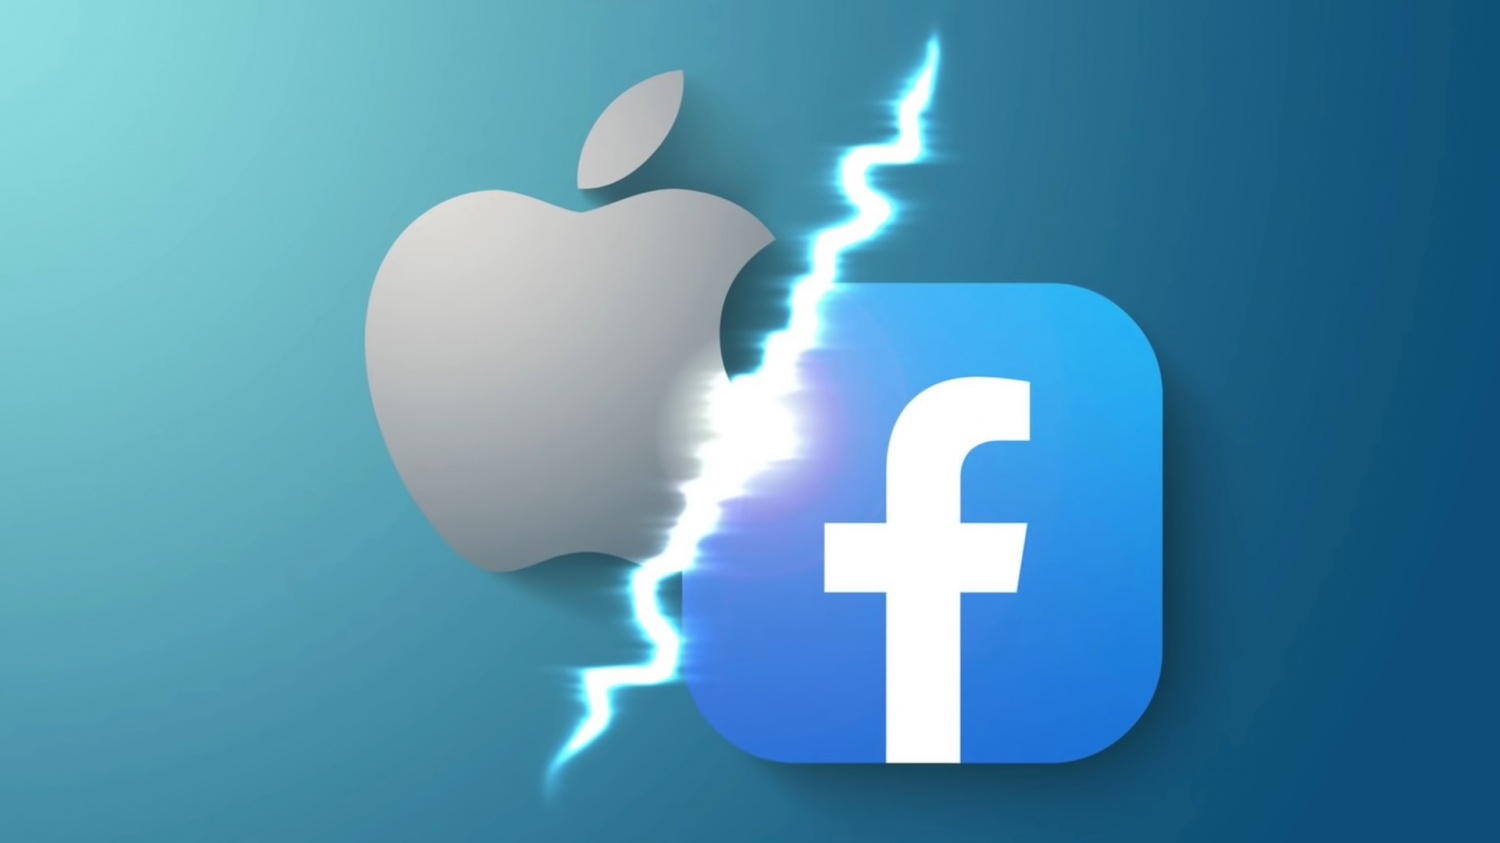 史诗与苹果:苹果巨大的表达怀疑/ Facebook尽管提交/ 1600个文档